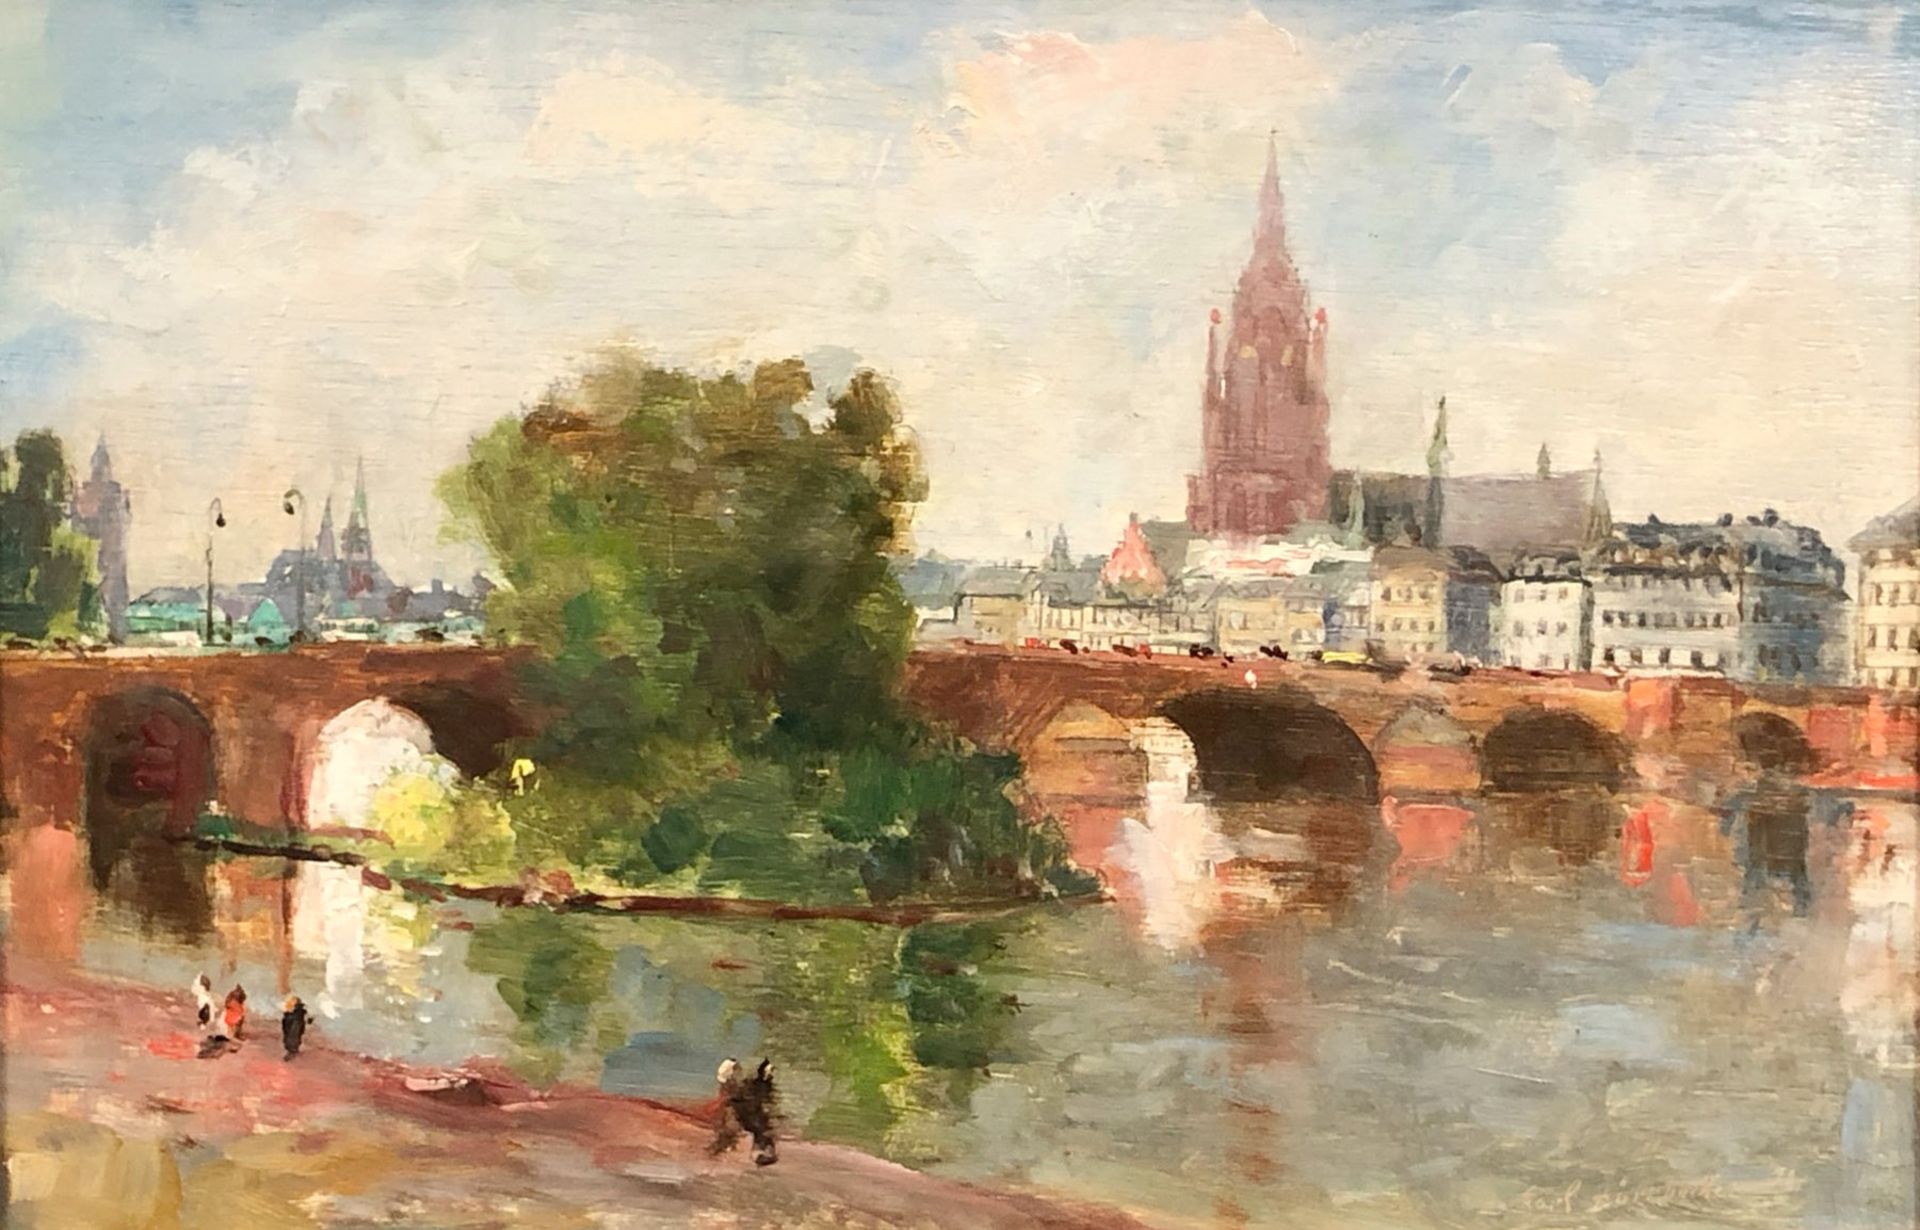 Karl DÖRRBECKER (1894 - 1983). Frankfurt. The old bridge 1937.